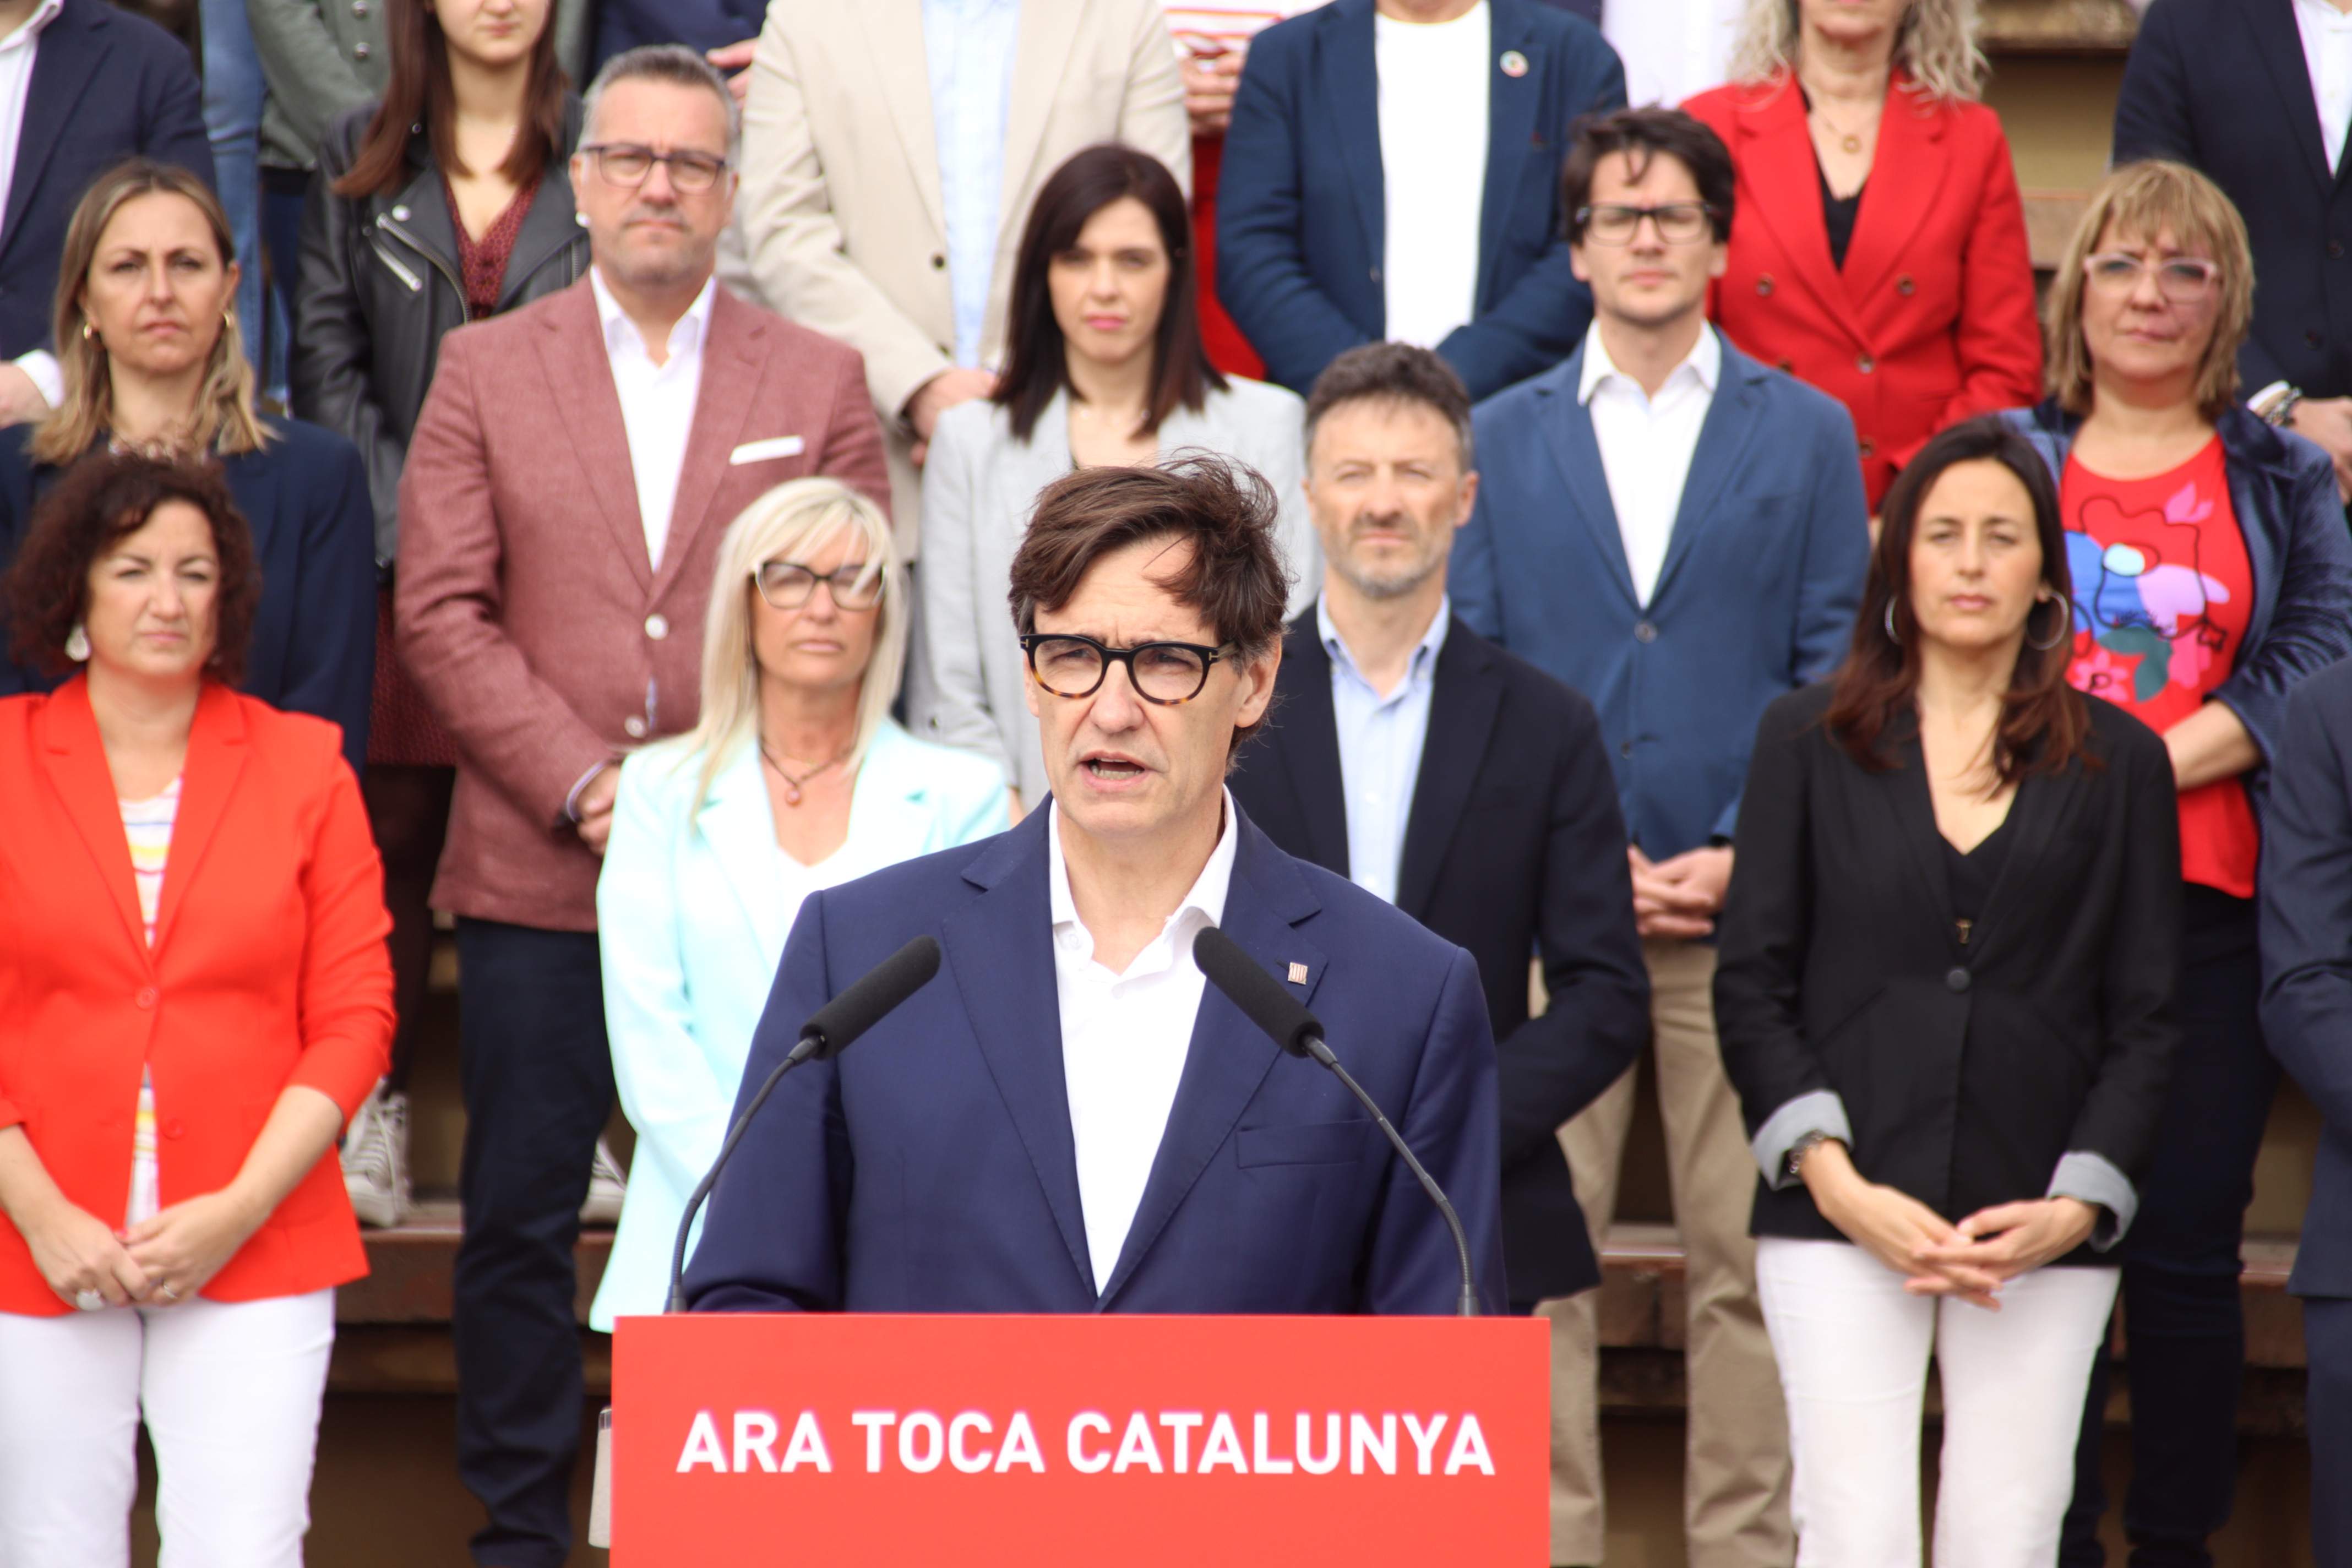 Illa defensa formar un Govern per sobre d'ideologies: "La millor Catalunya està per venir"